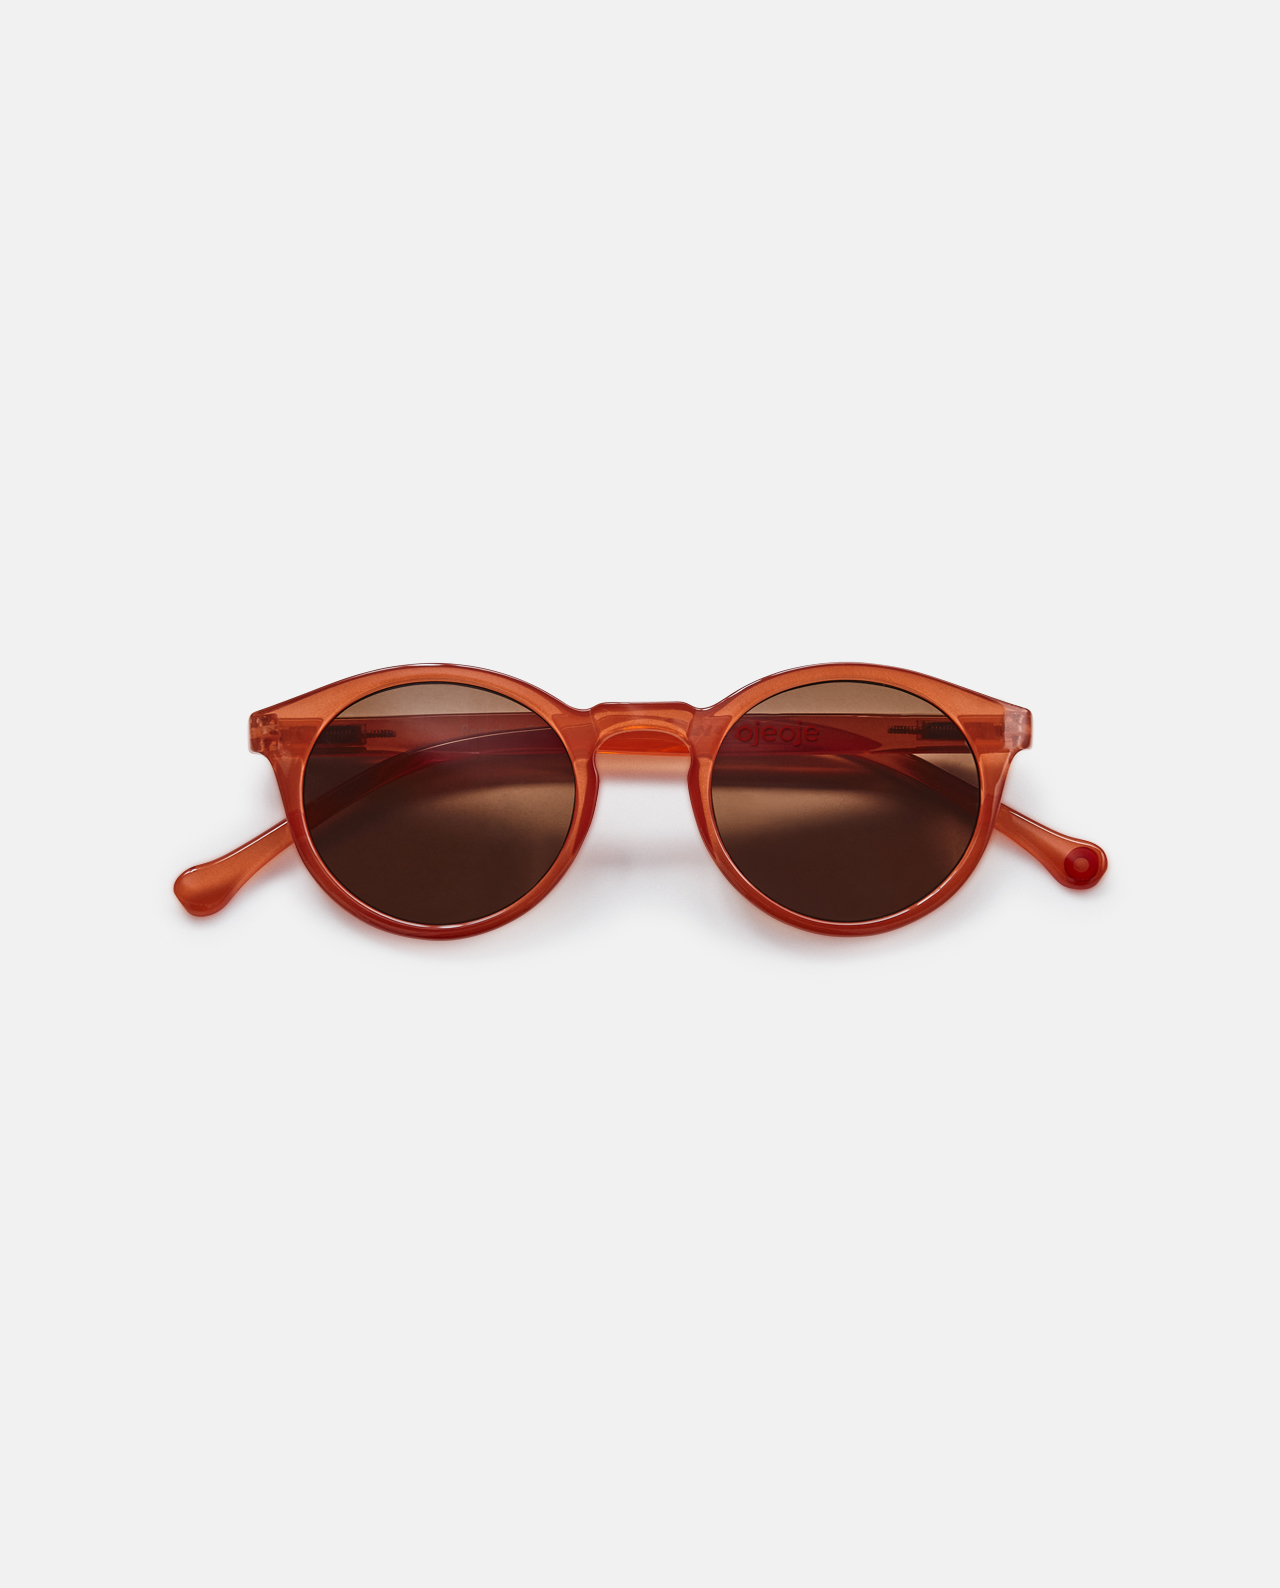 Solbriller fra OjeOje – Coral (Model A)